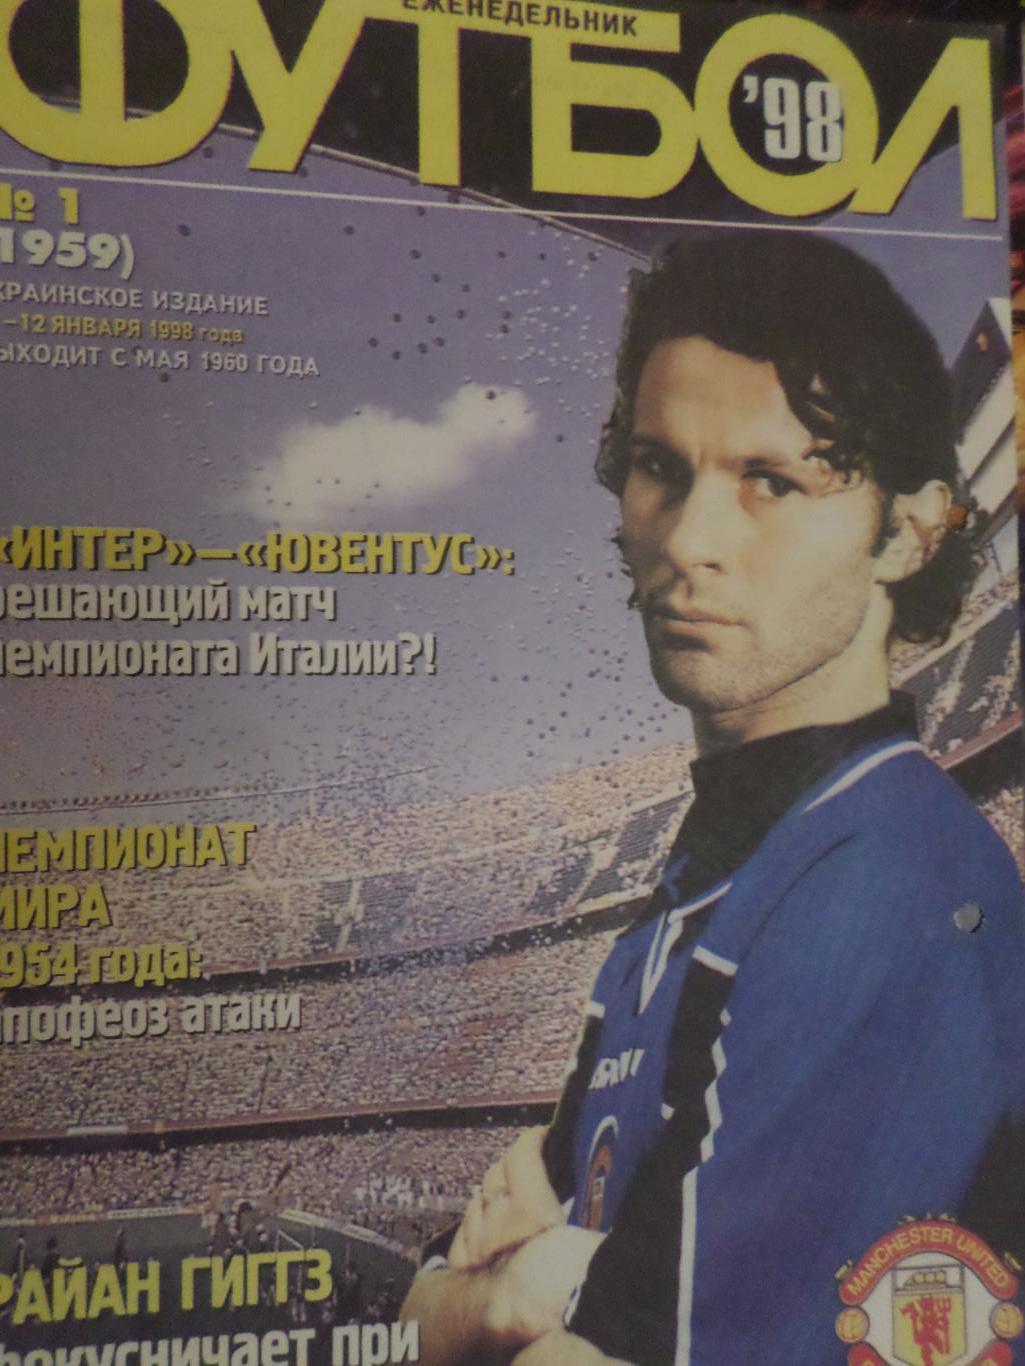 постер из еженедельника Футбол (Киев) 1998 г Гигз Манчестер Юнайтед